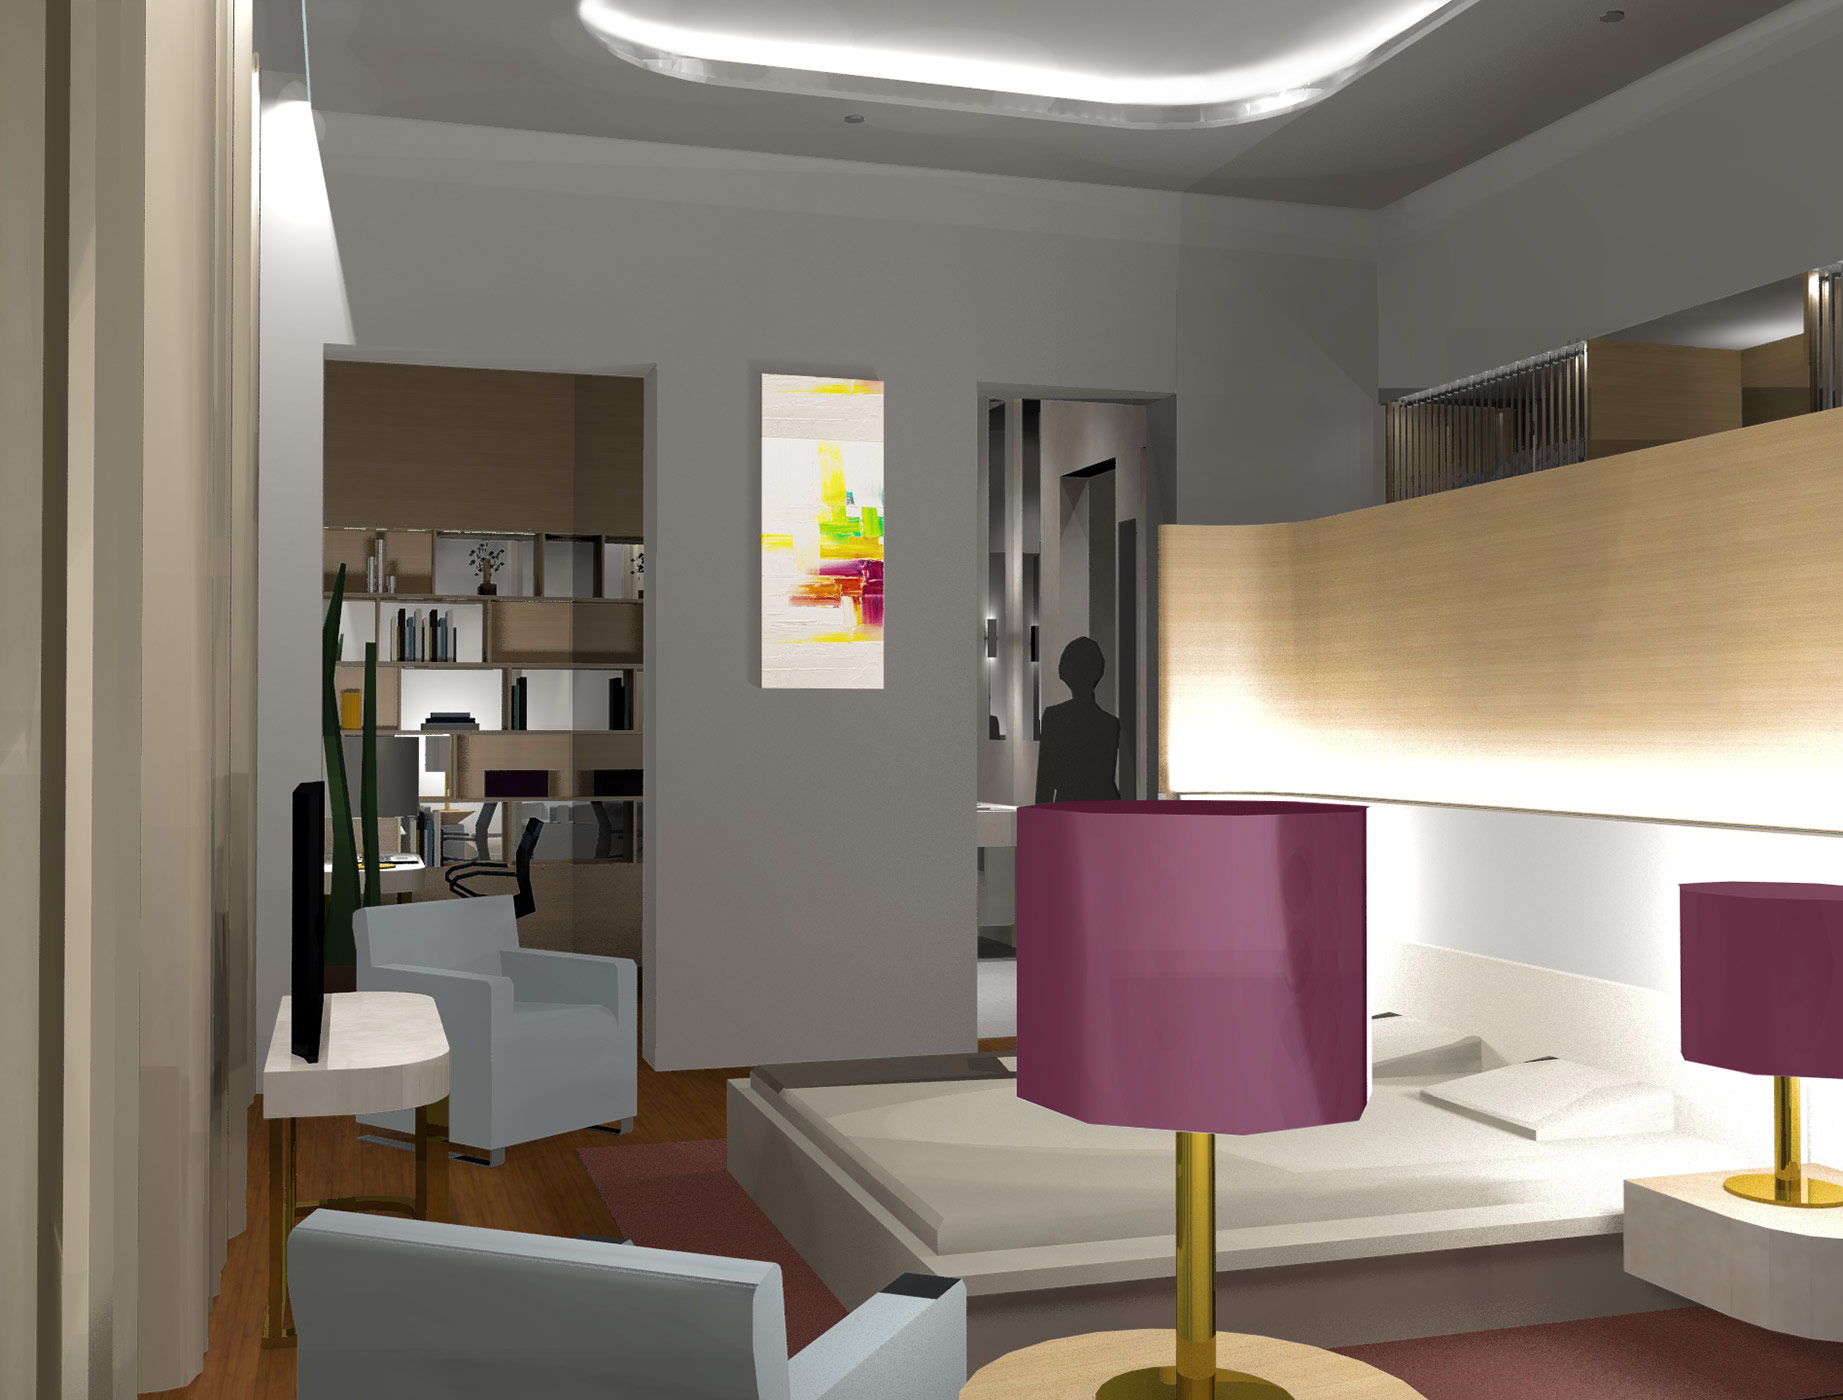 3D Render - Typical Hotel Mock Up Room